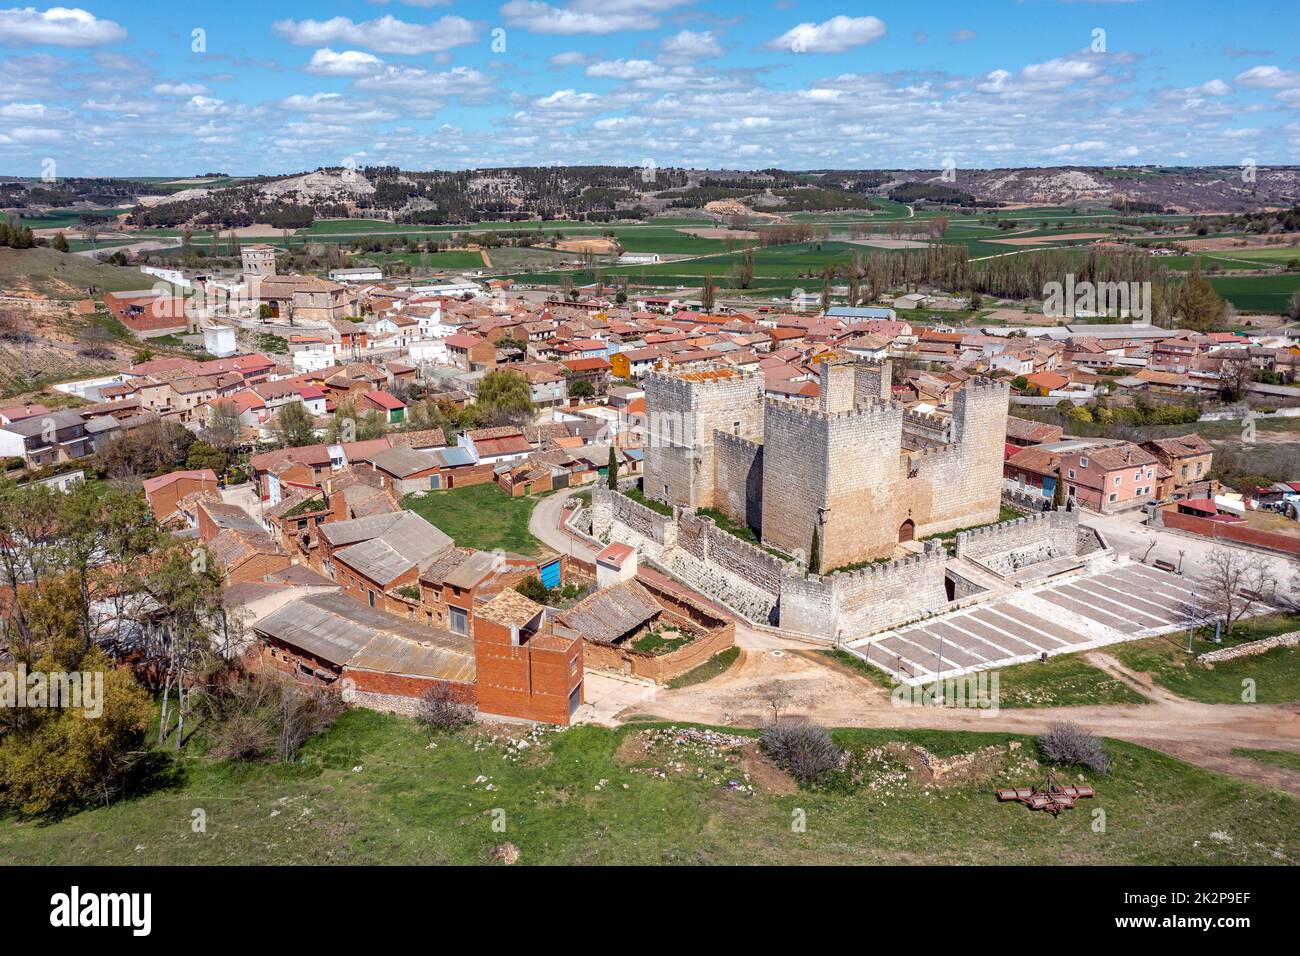 Vue panoramique sur Encinas de Esgueva, est une commune de la province de Valladolid, Espagne. Banque D'Images